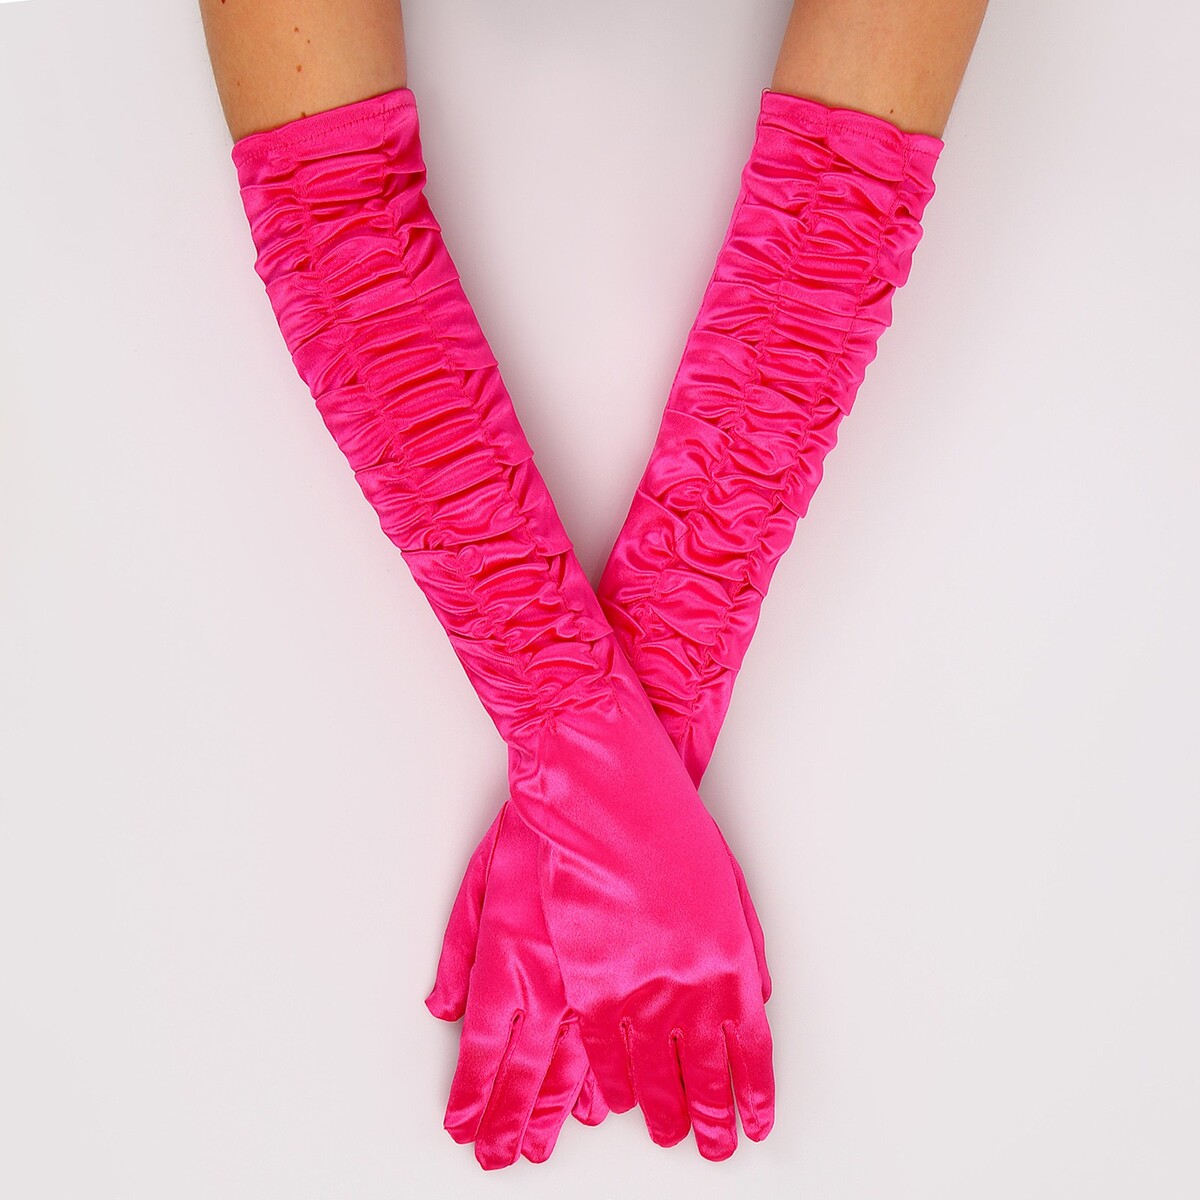 Карнавальный аксессуар - перчатки со сборкой, цвет фуксия карнавальнеый аксессуар перчатки фуксия металлик искусственная кожа